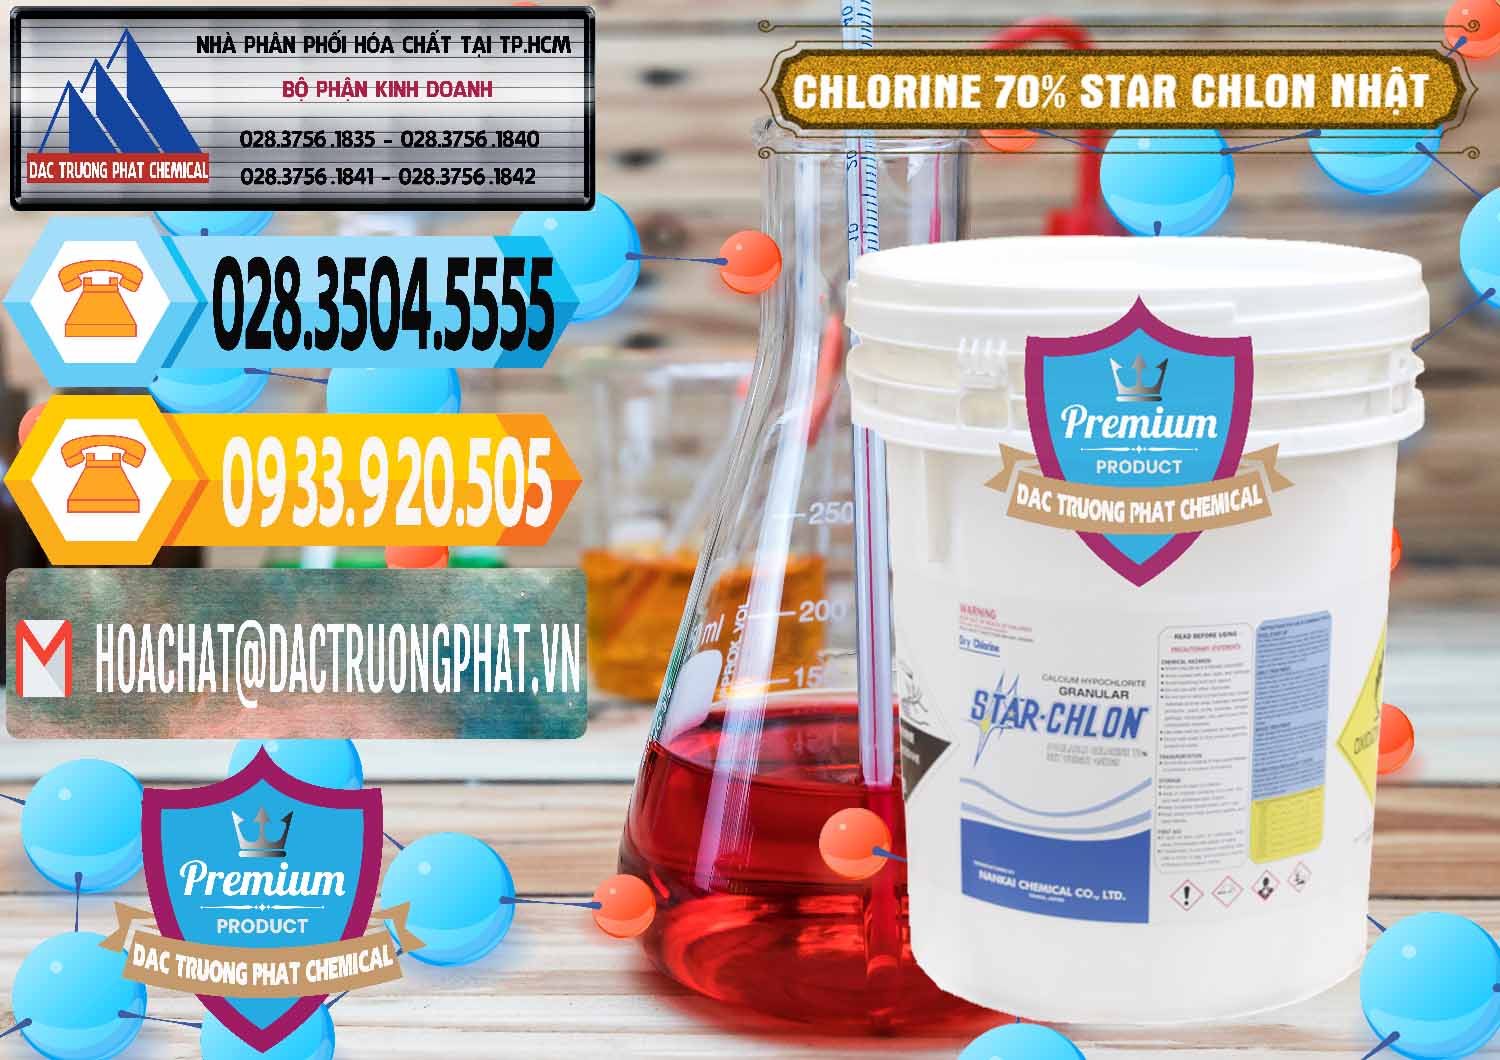 Cty chuyên bán ( cung ứng ) Clorin – Chlorine 70% Star Chlon Nhật Bản Japan - 0243 - Chuyên cung cấp và phân phối hóa chất tại TP.HCM - hoachattayrua.net